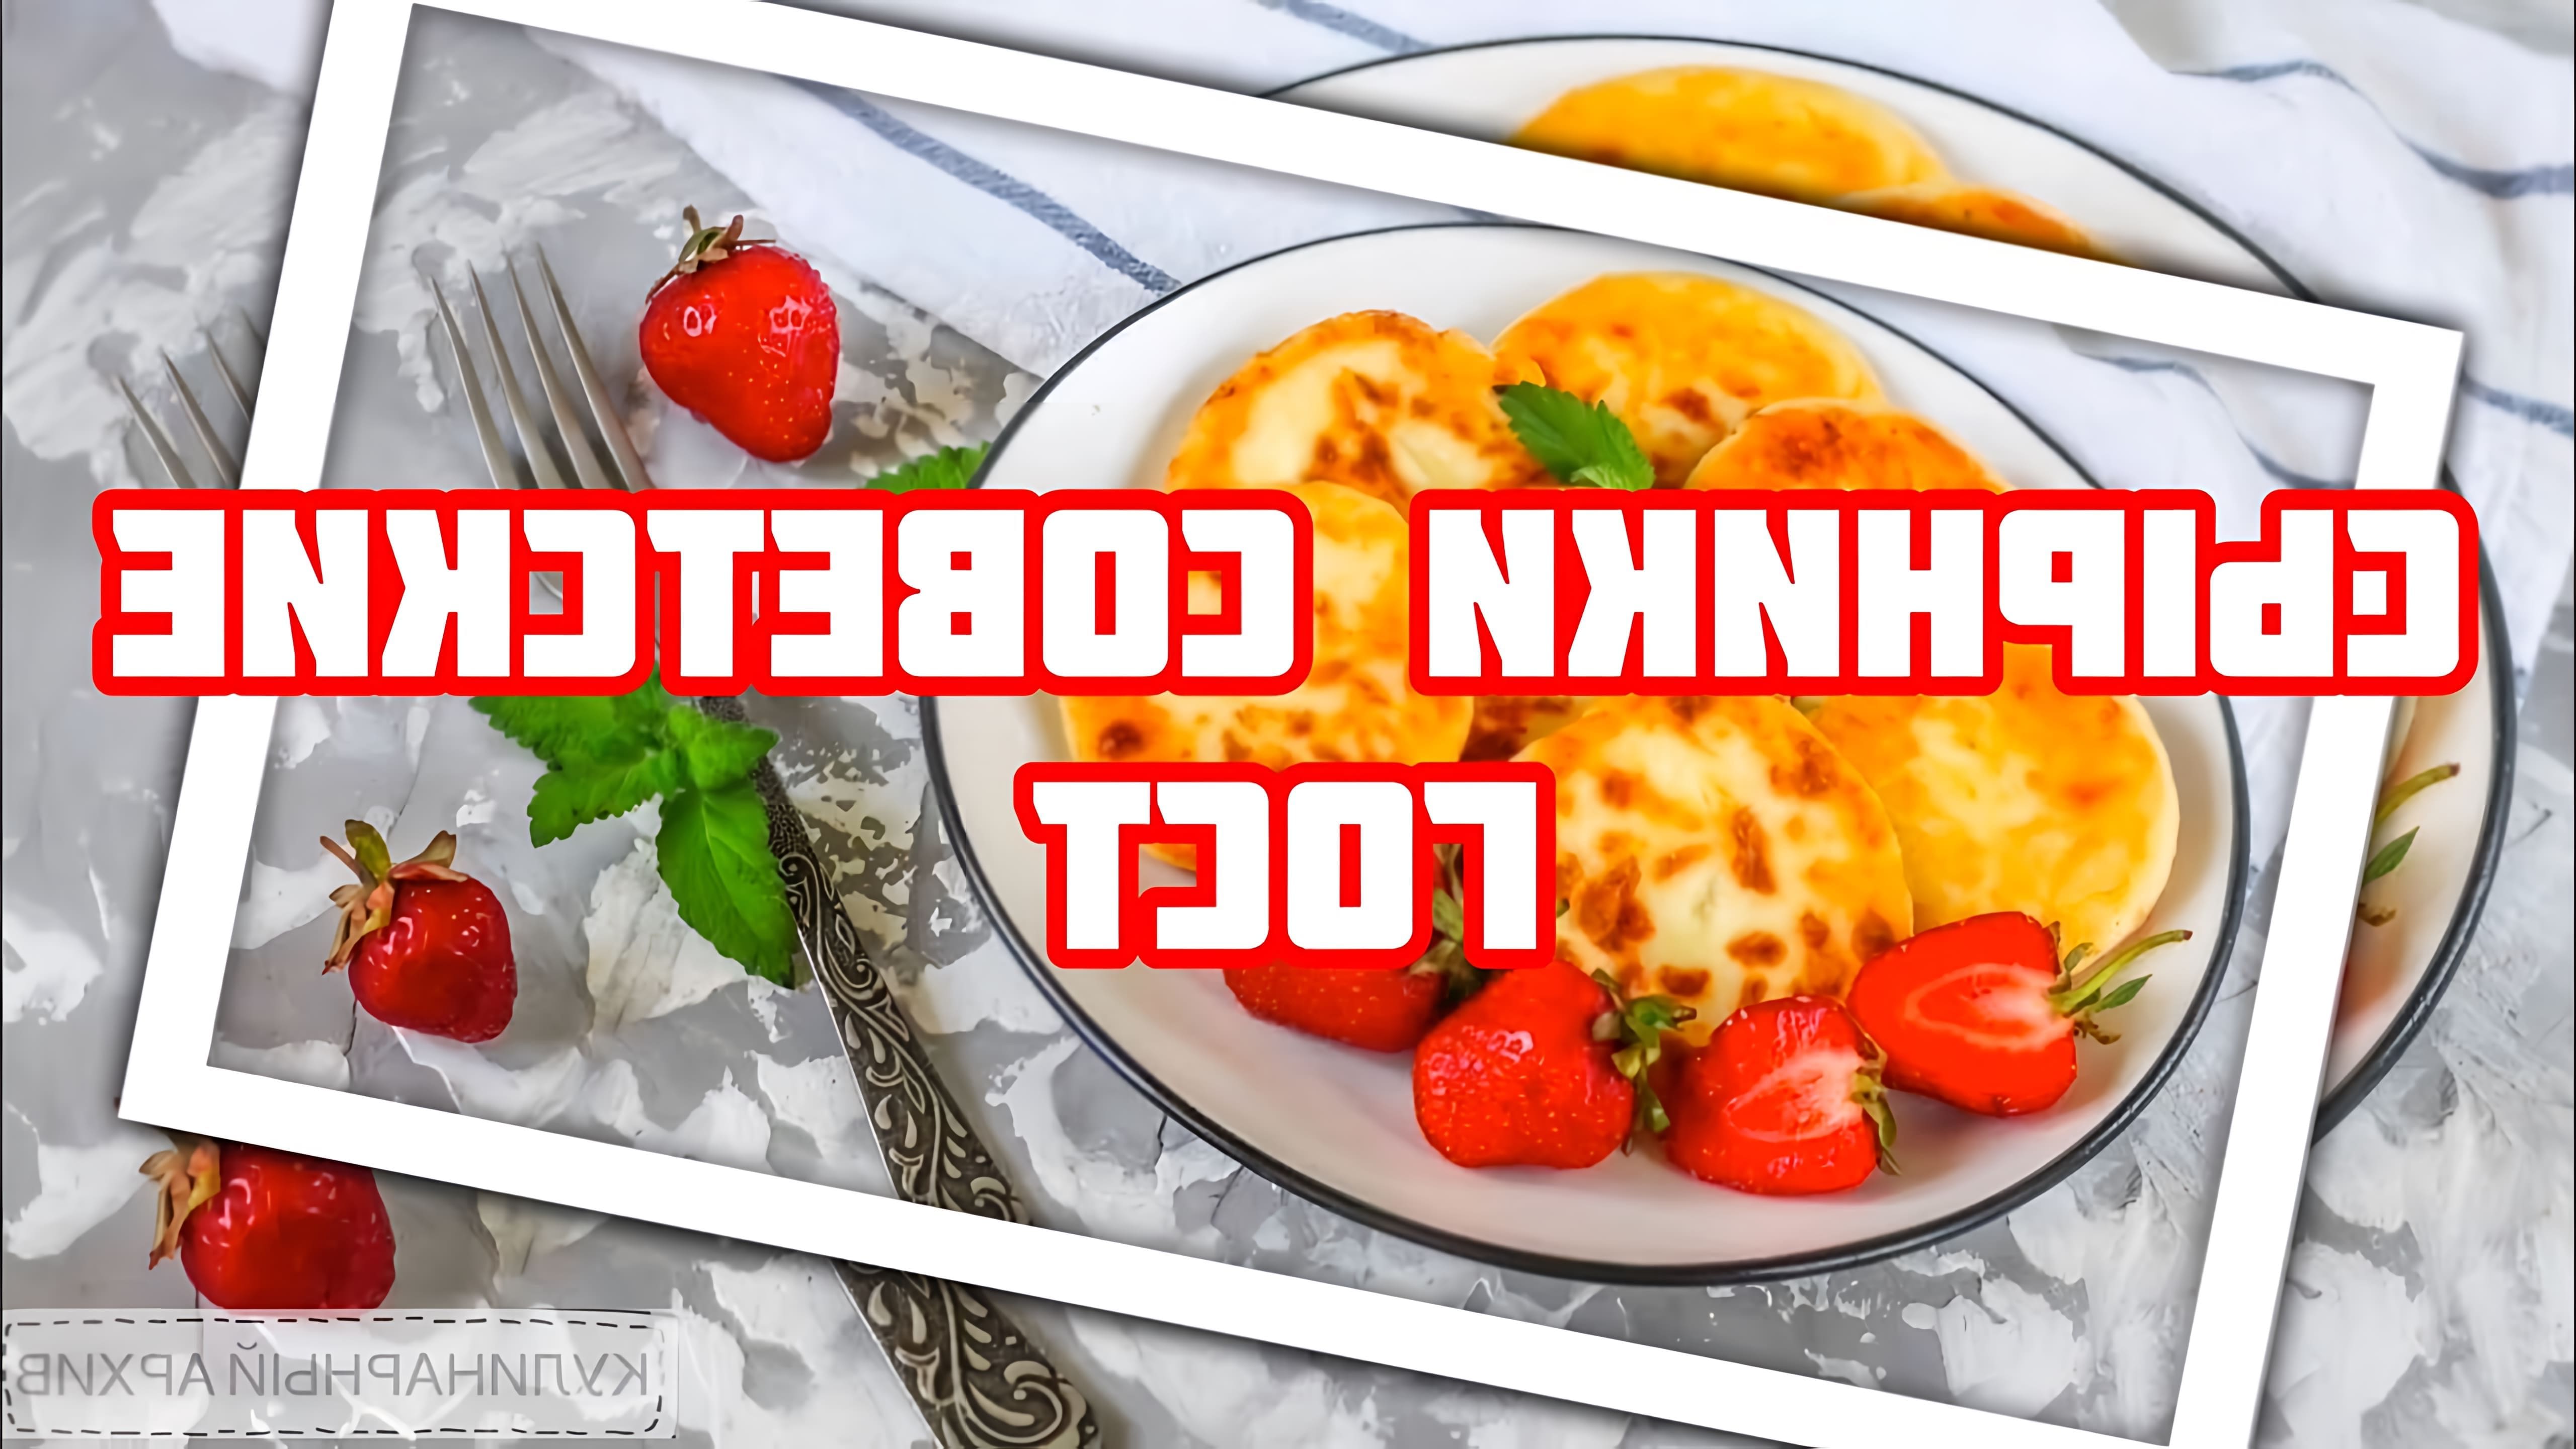 В этом видео-ролике вы увидите, как приготовить вкусные и ароматные творожные сырники по классическому советскому рецепту